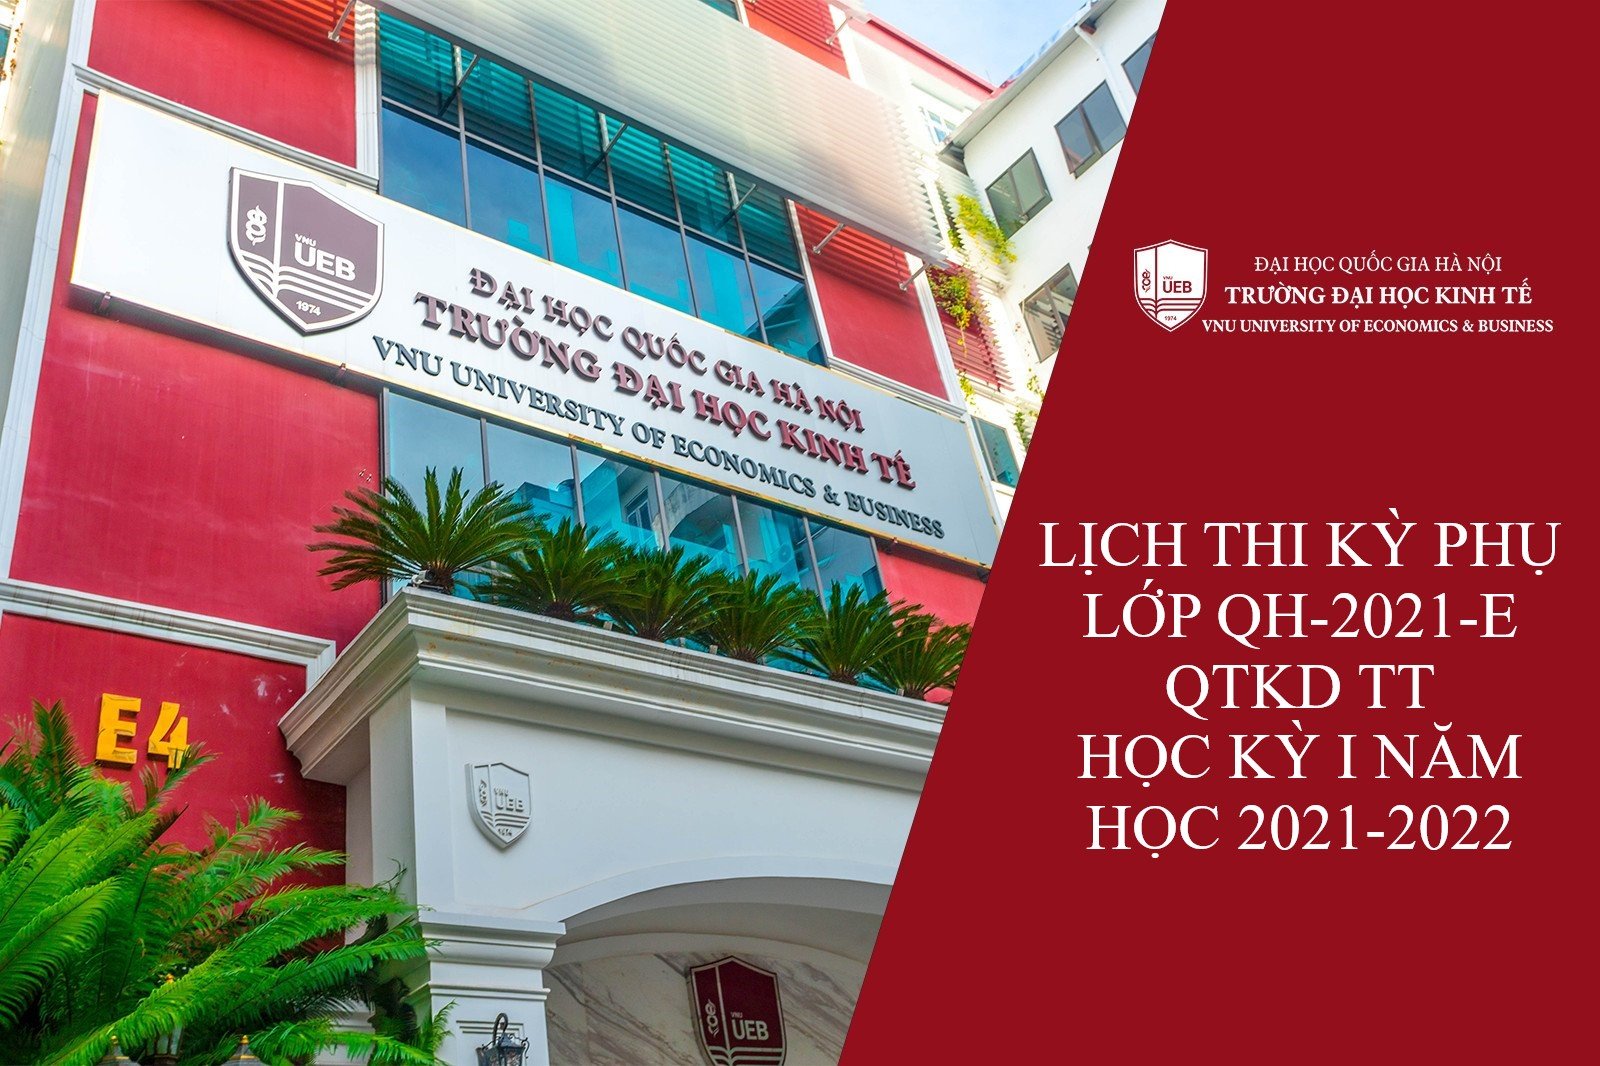 Lịch thi kỳ thi phụ lớp QH-2021-E QTKD-TT, học kỳ I năm học 2021 - 2022